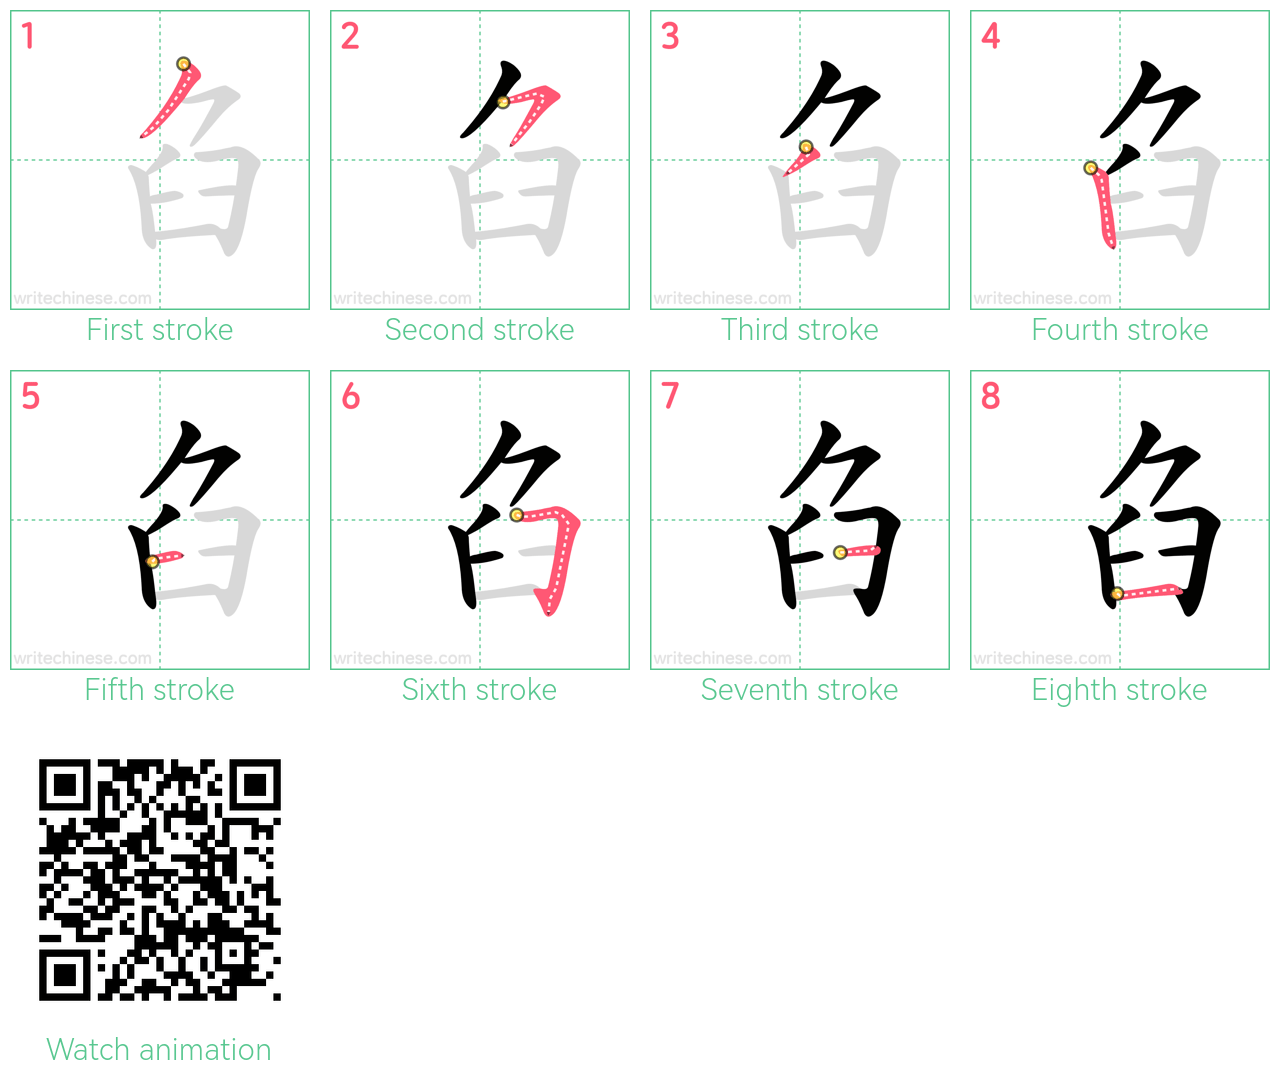 臽 step-by-step stroke order diagrams